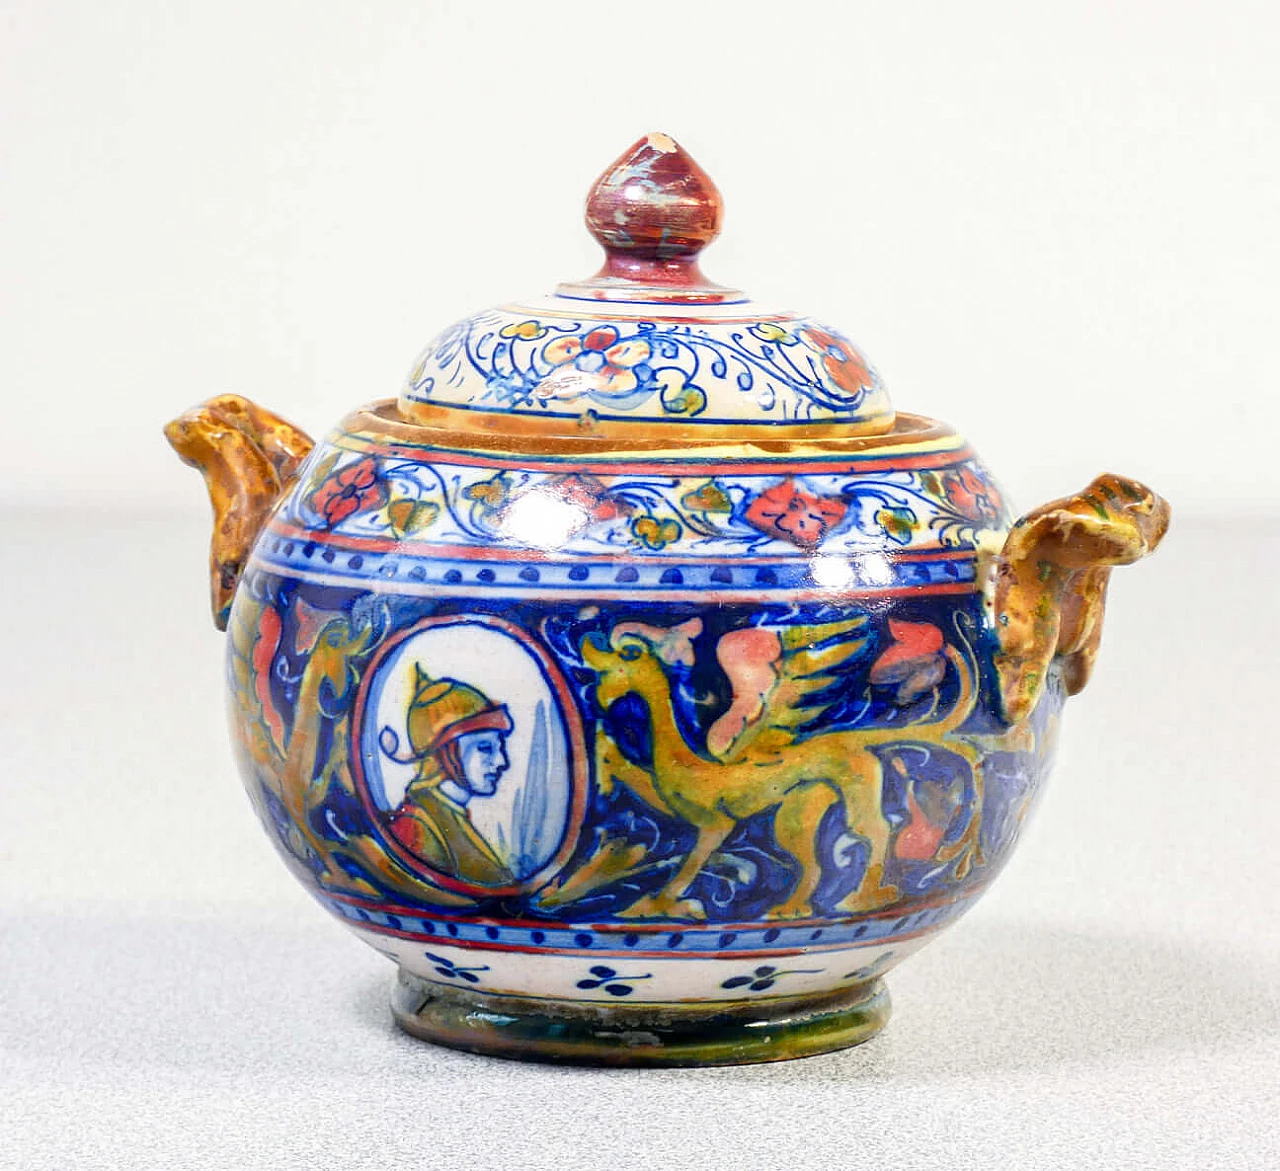 Ceramic teapot and sugar bowl by Mastro Giorgio Gualdo Tadino, early 20th century 10